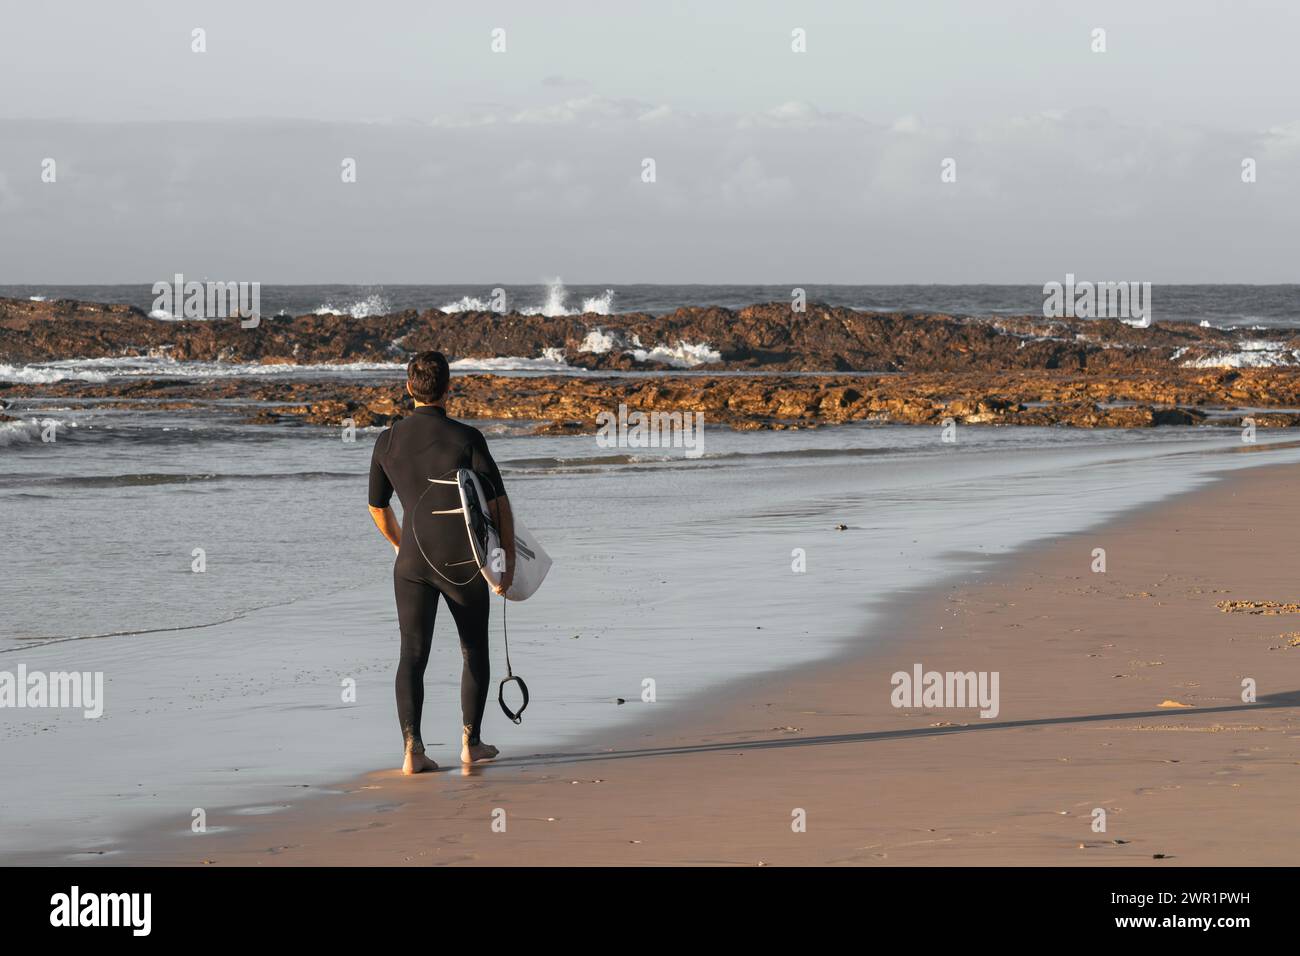 Surfeur en combinaison debout seul sur le sable regardant la mer avec sa planche de surf sous le bras Banque D'Images